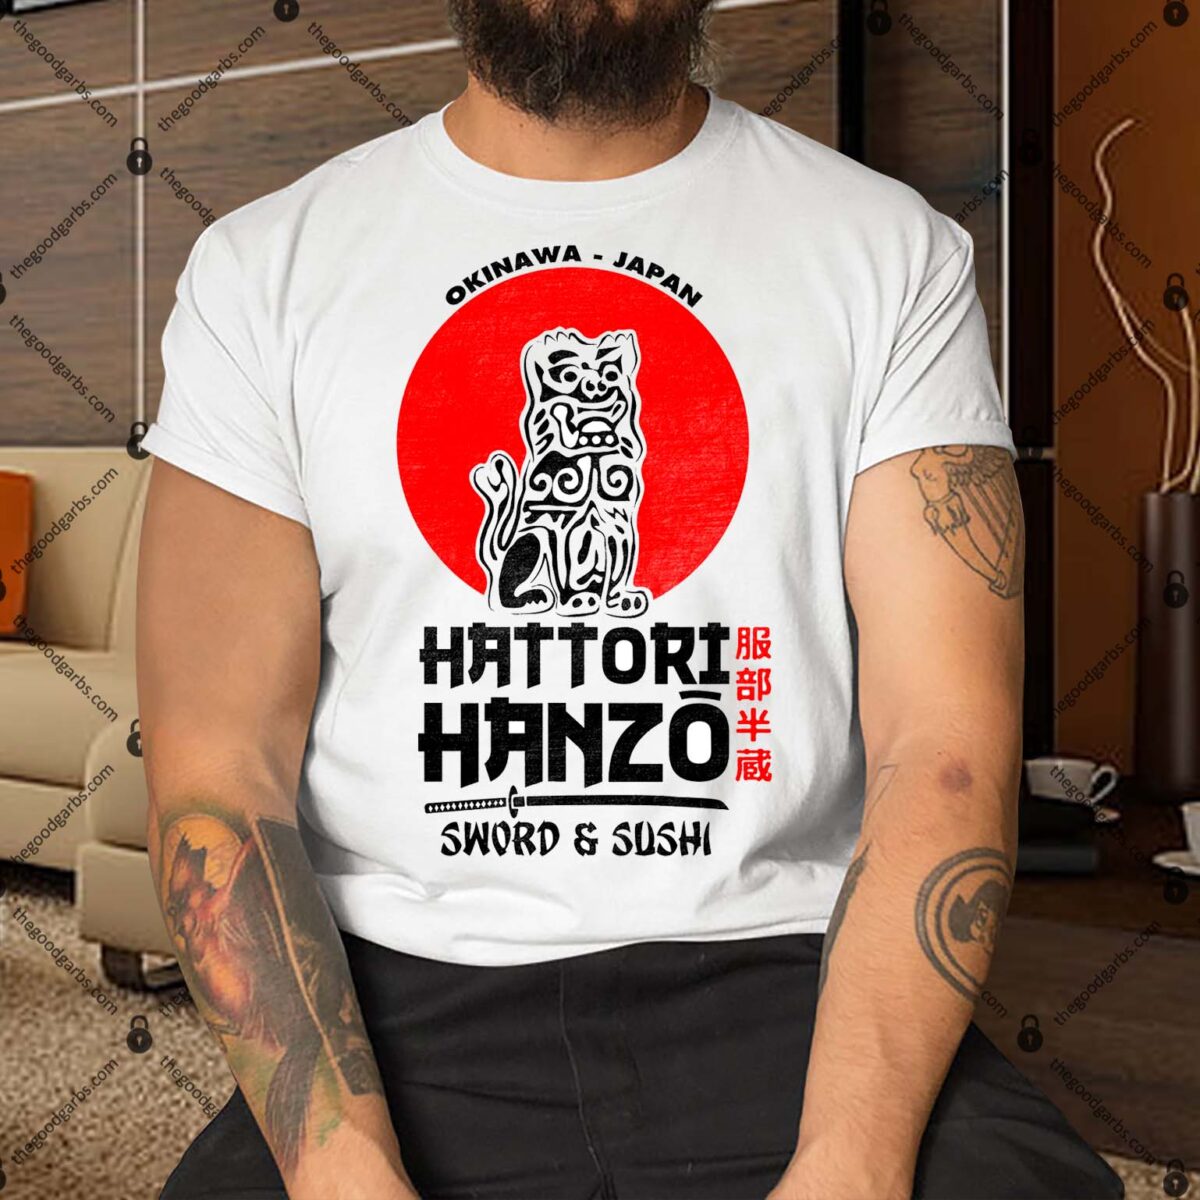 Hattori Hanzo Shirt